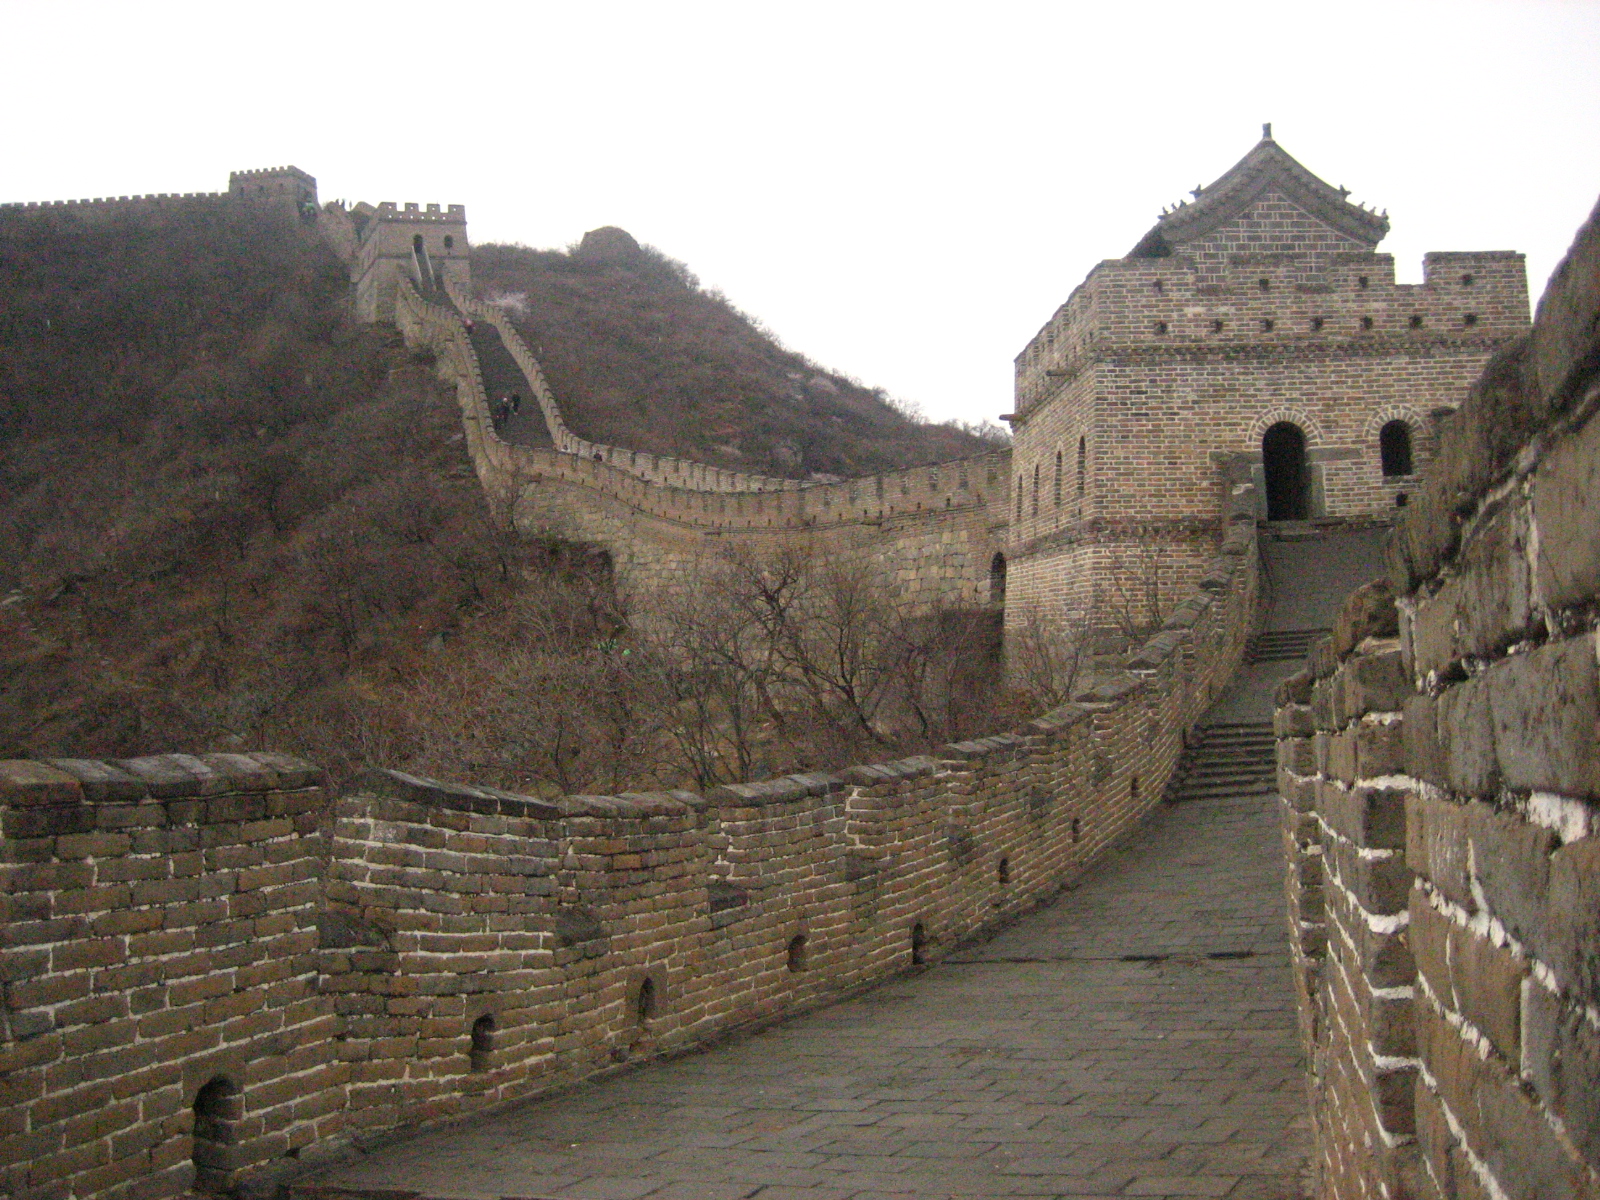 La gran Muralla China